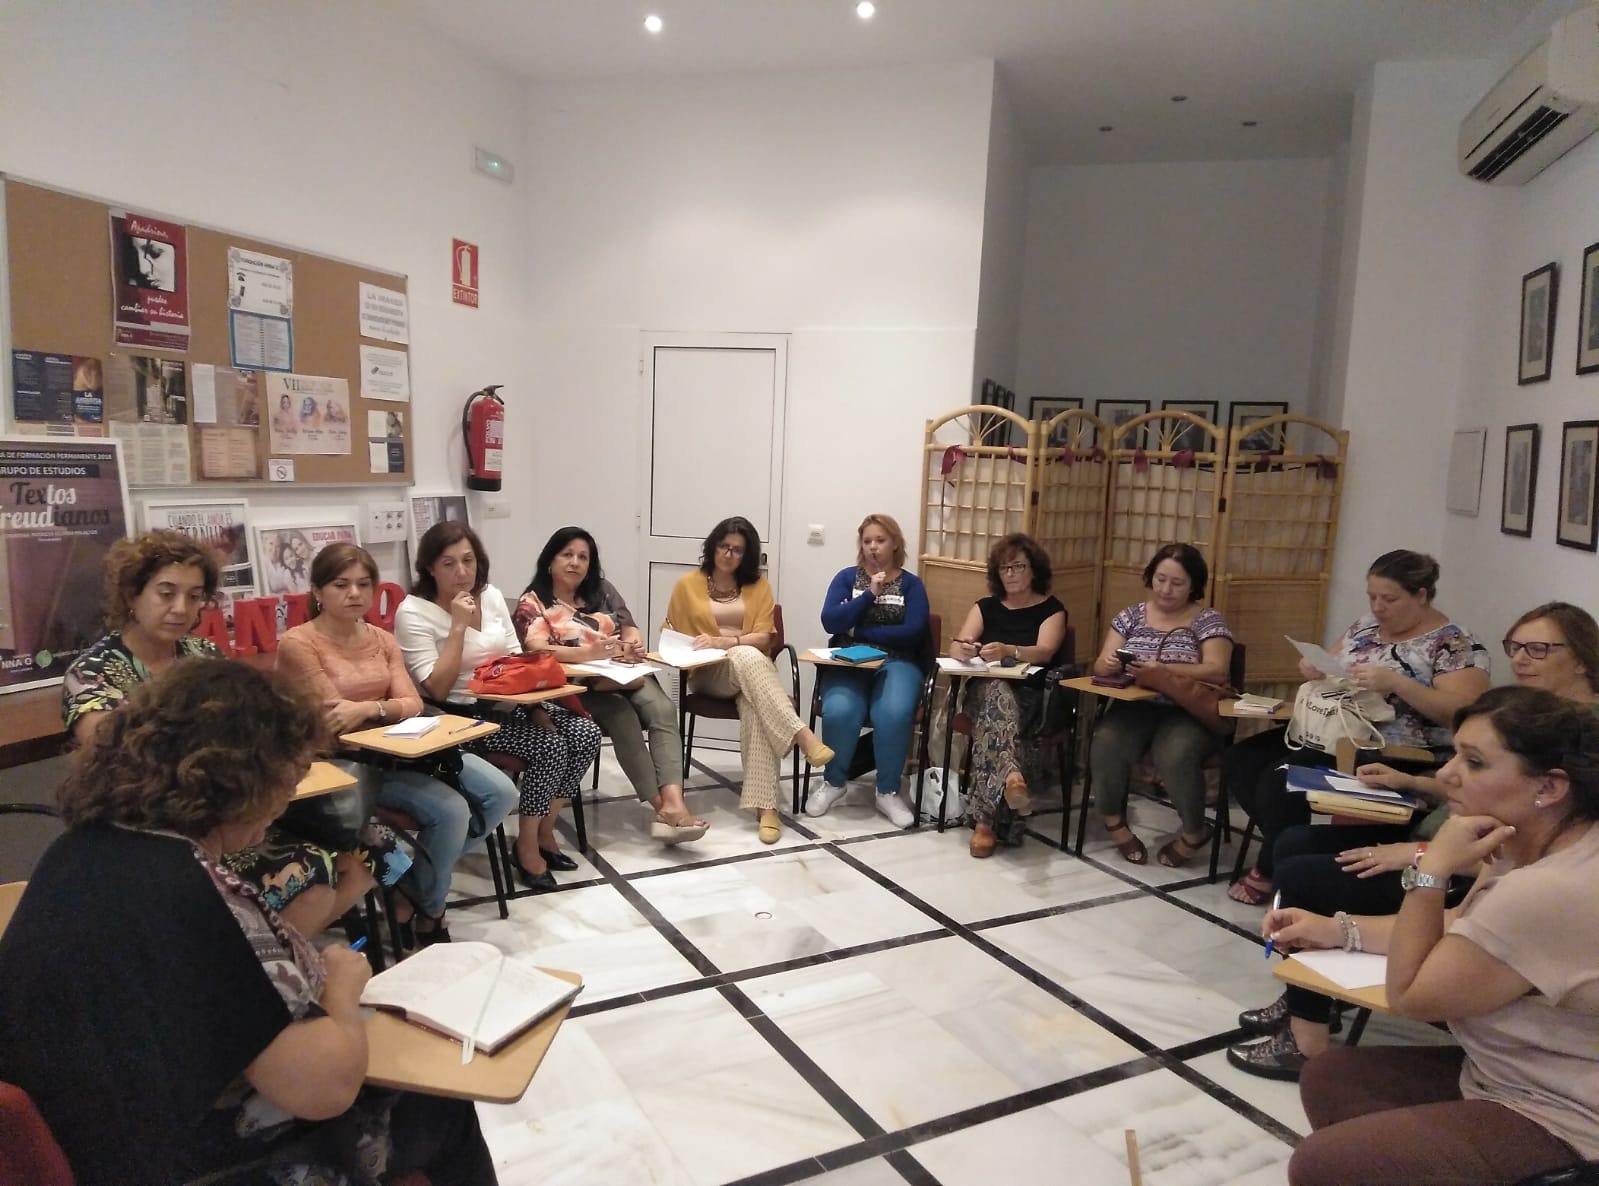 Imagen de la reunión del club de lectura del pasado viernes 28 de septiembre